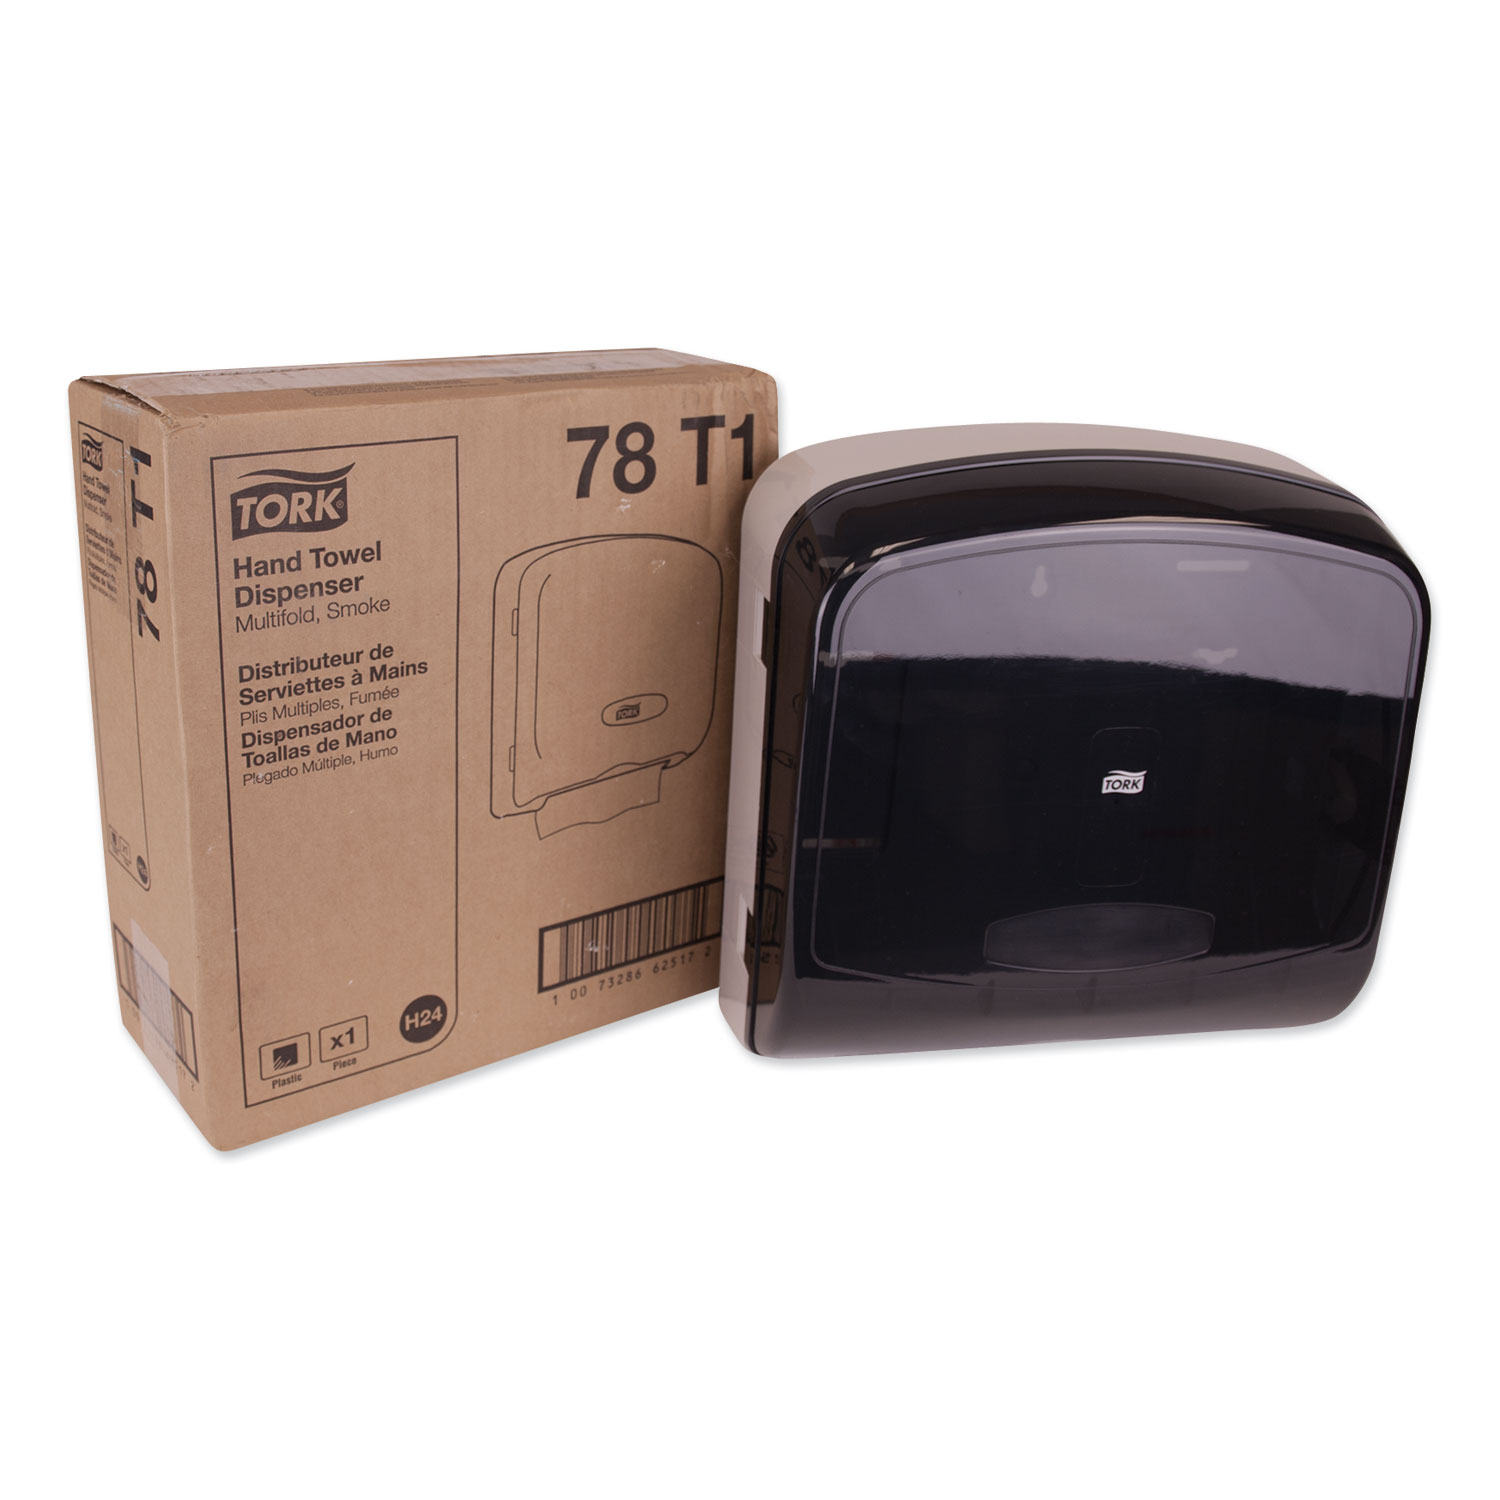  Tork 78T1 Multifold Hand Towel Dispenser, Plastic, 12.36 x 5.18 x 13, Smoke/Gray (TRK78T1) 